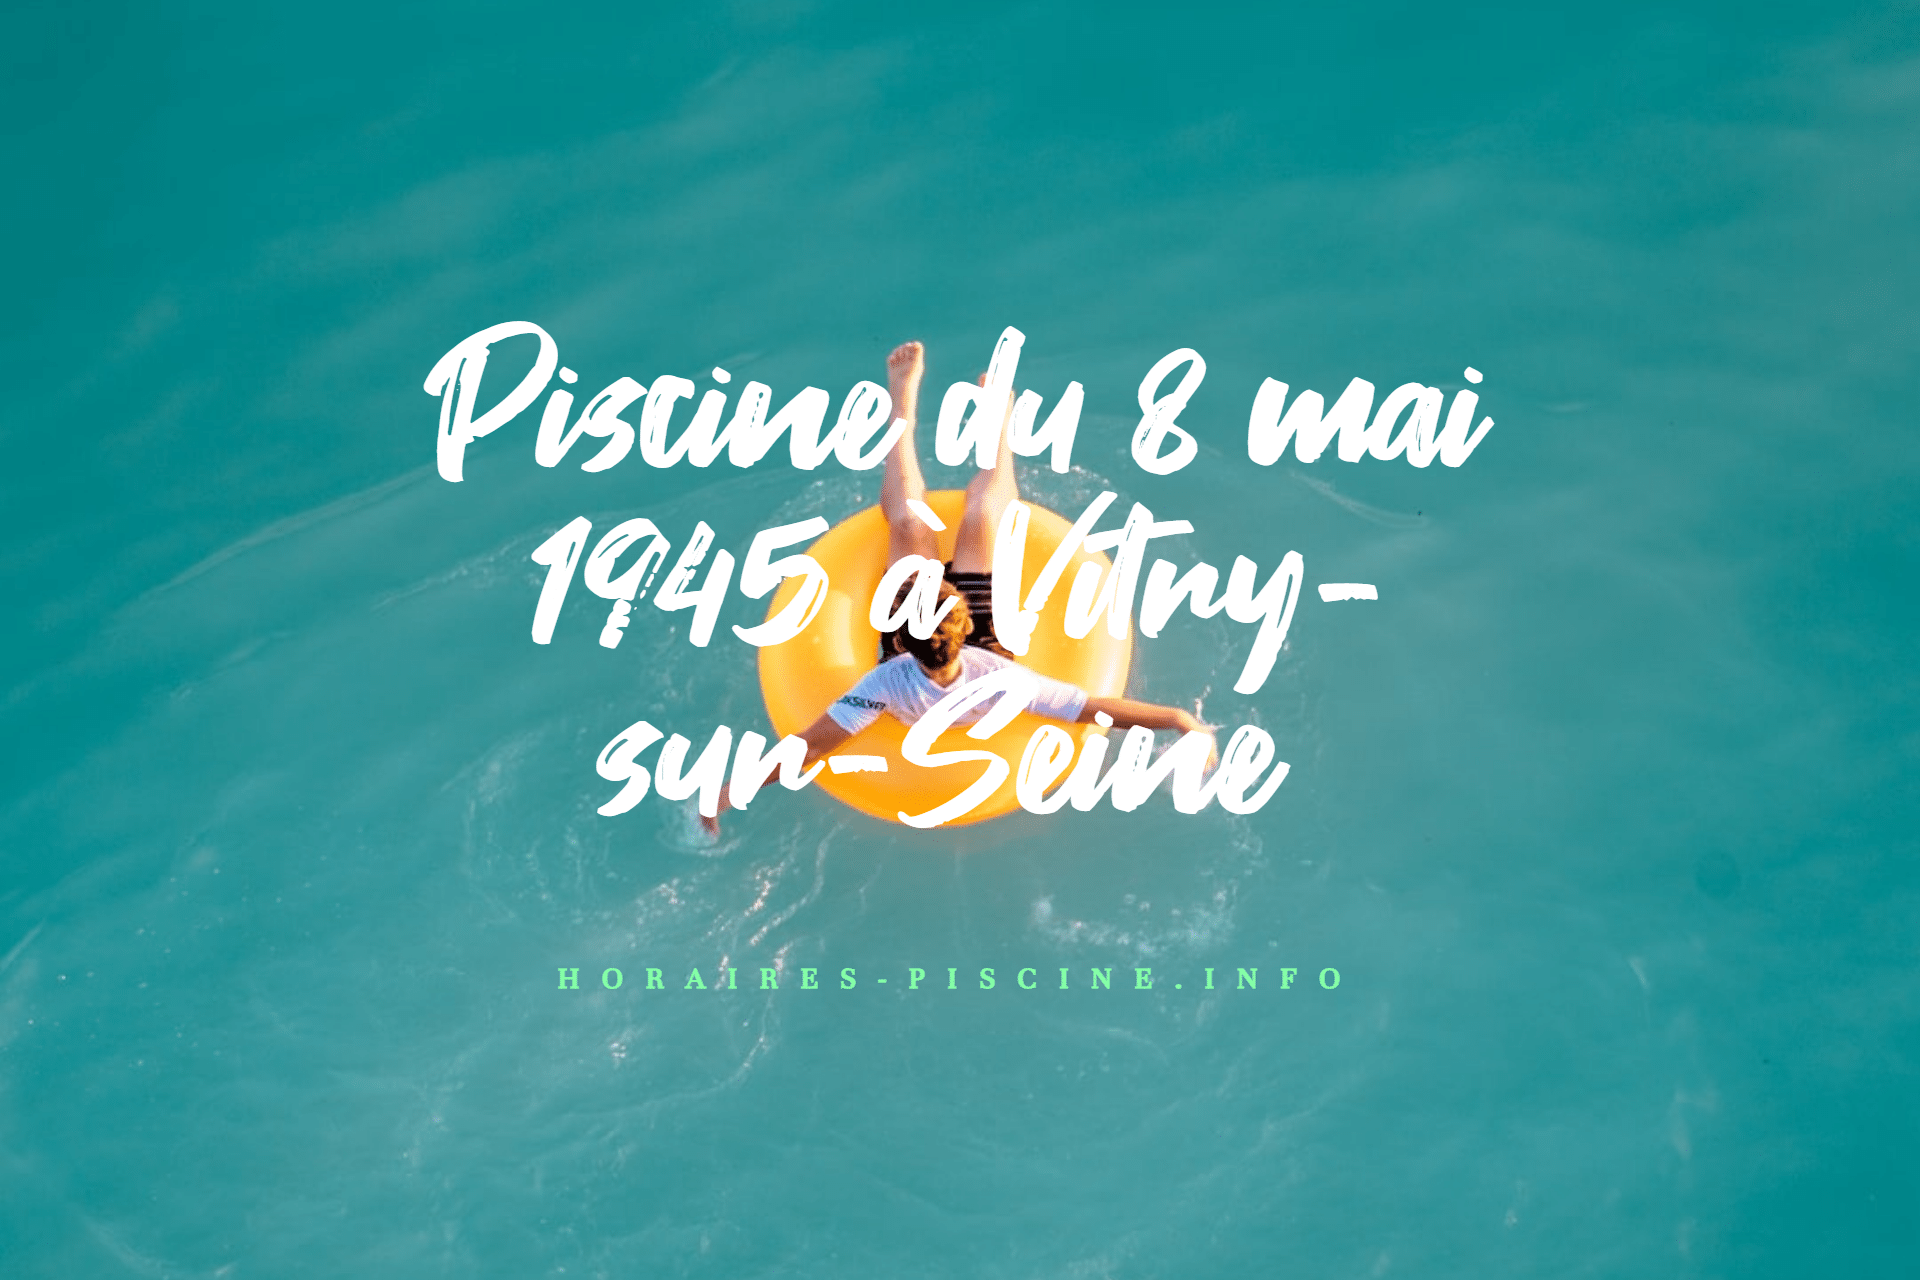 Piscine du 8 mai 1945 à Vitry-sur-Seine